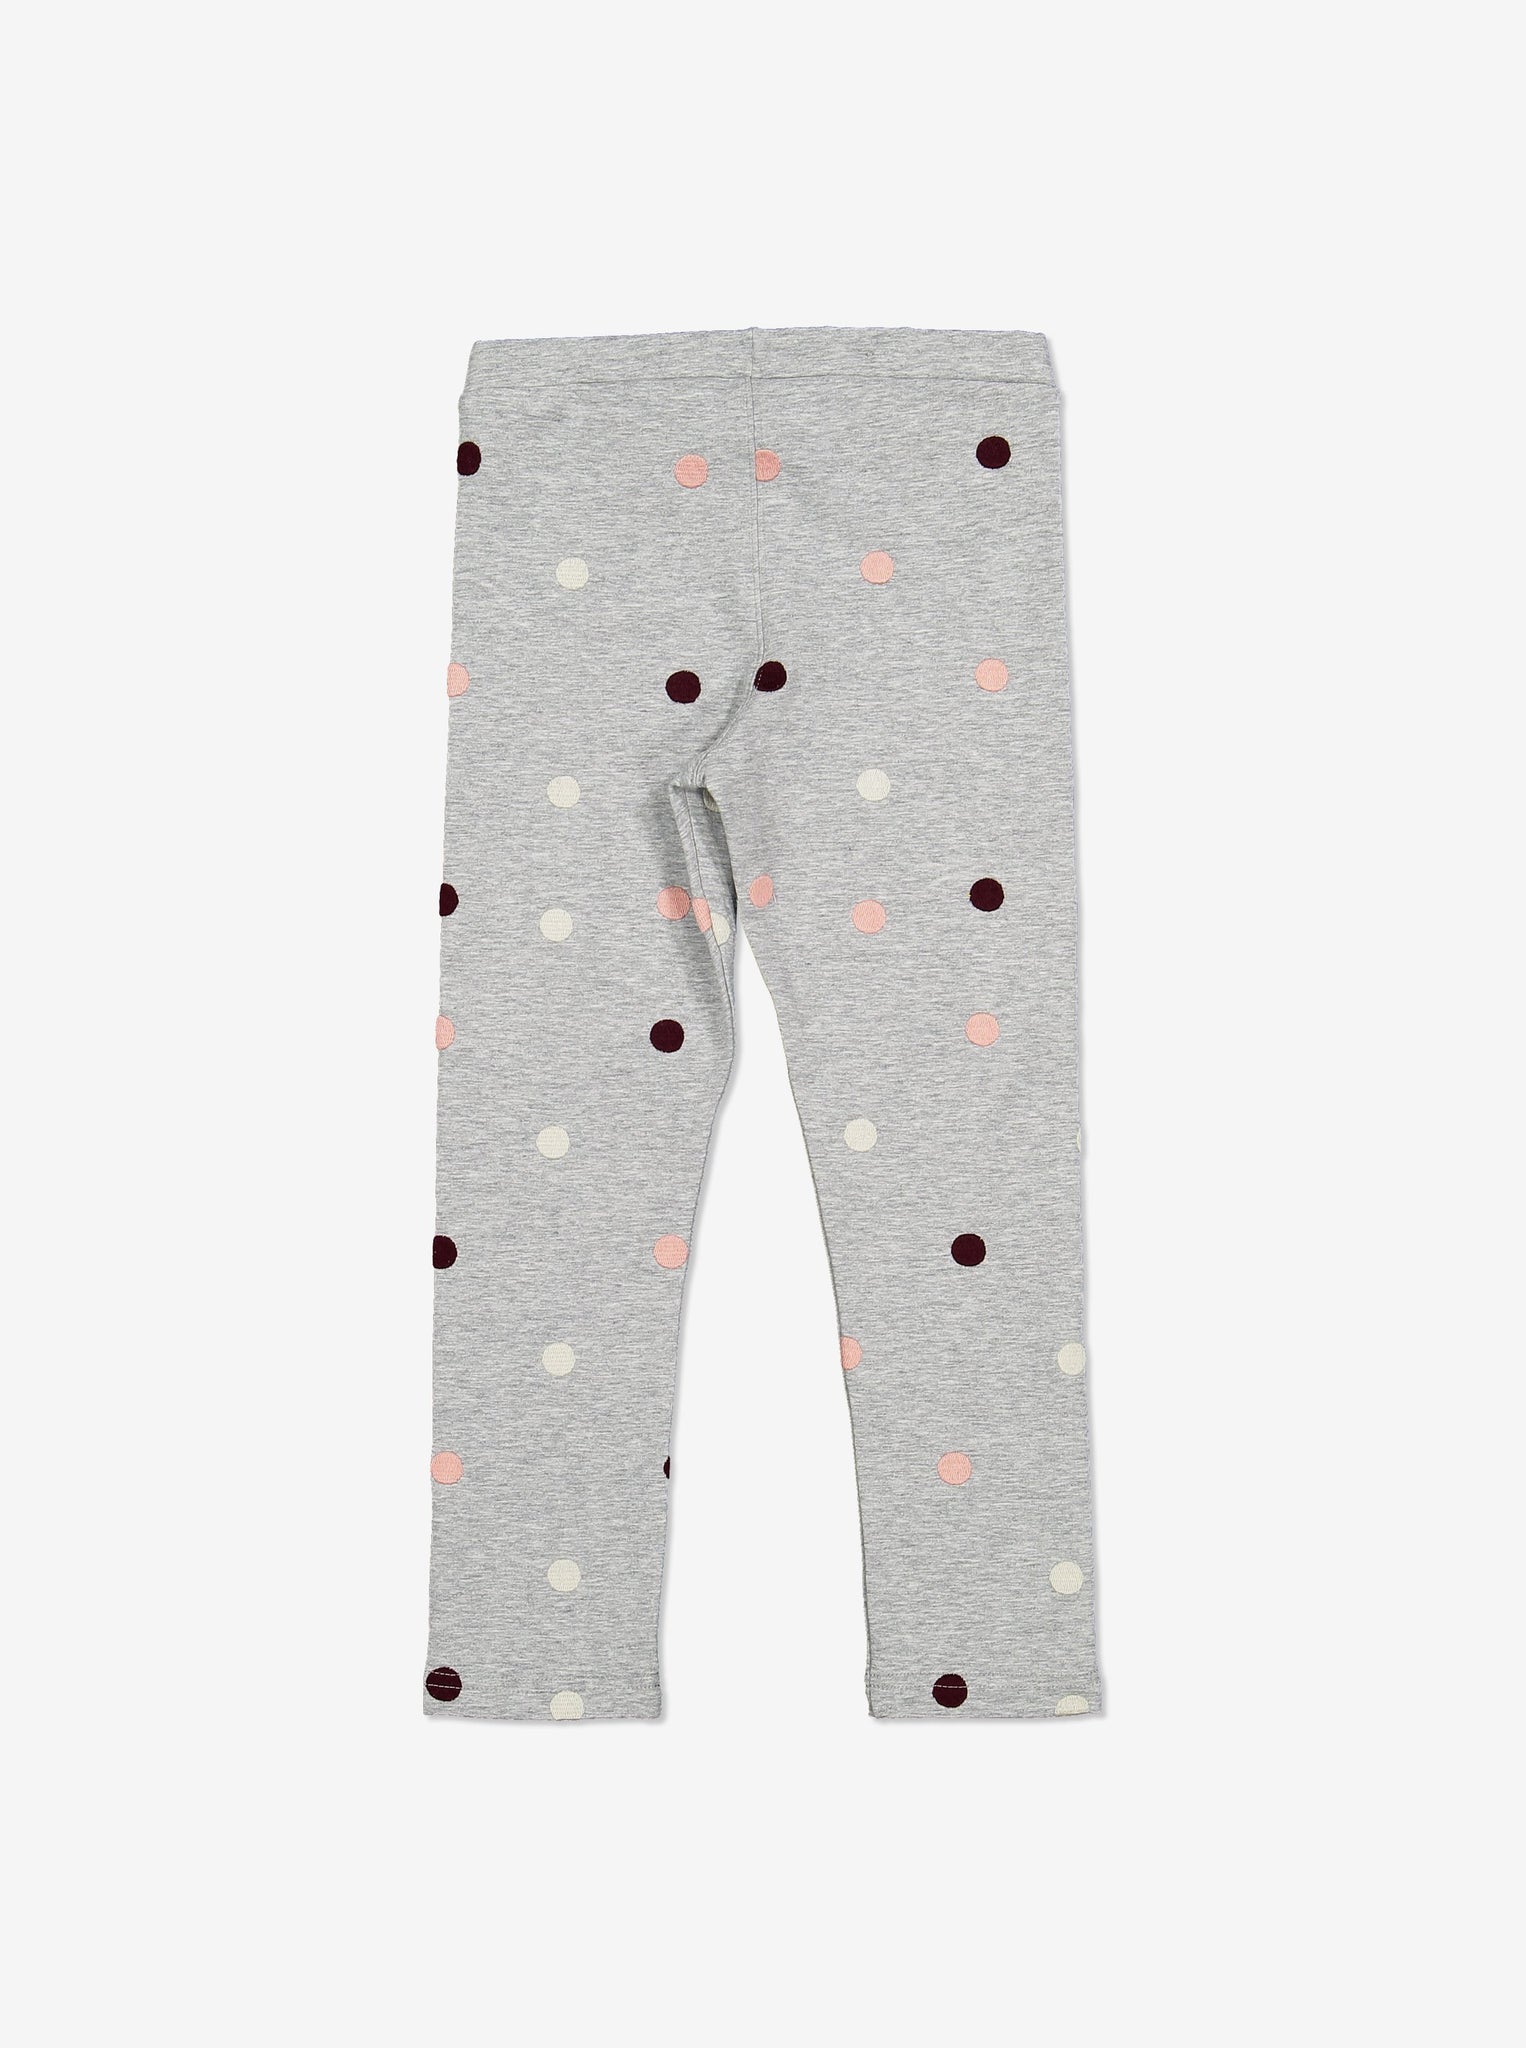 Polka Dot Kids Leggings-Unisex-1-6y-Grey